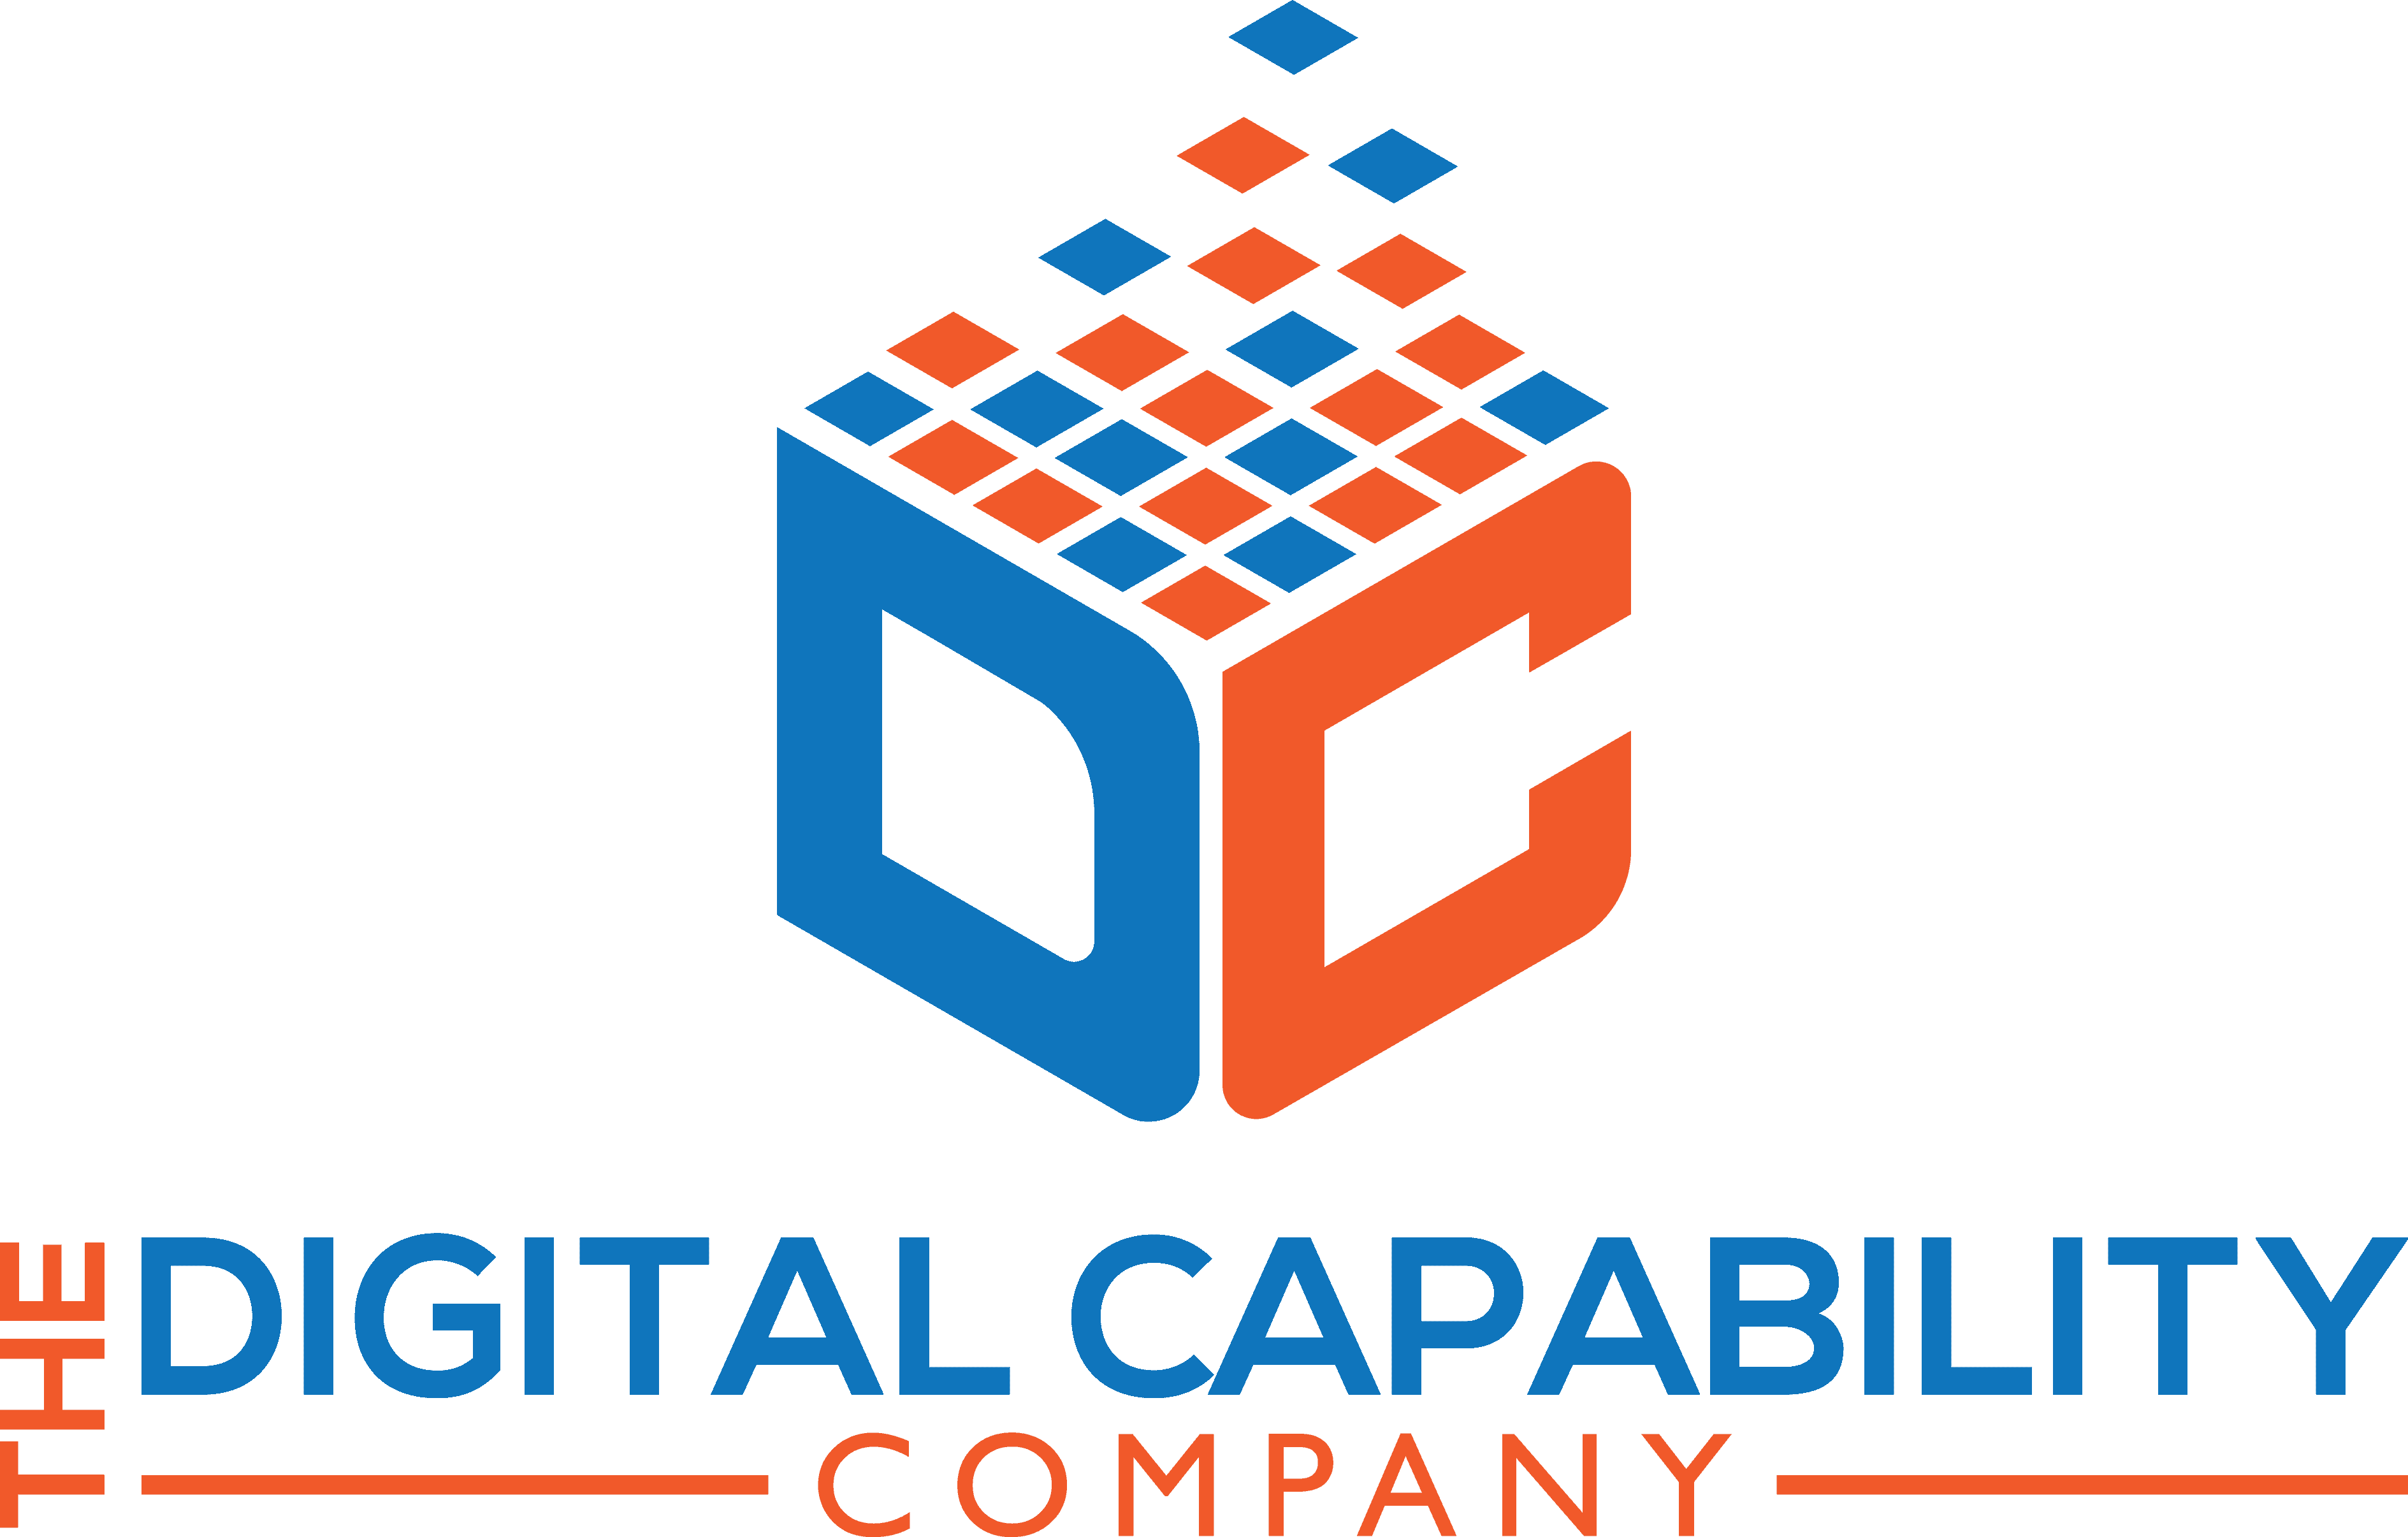 Digital Capability Company logo